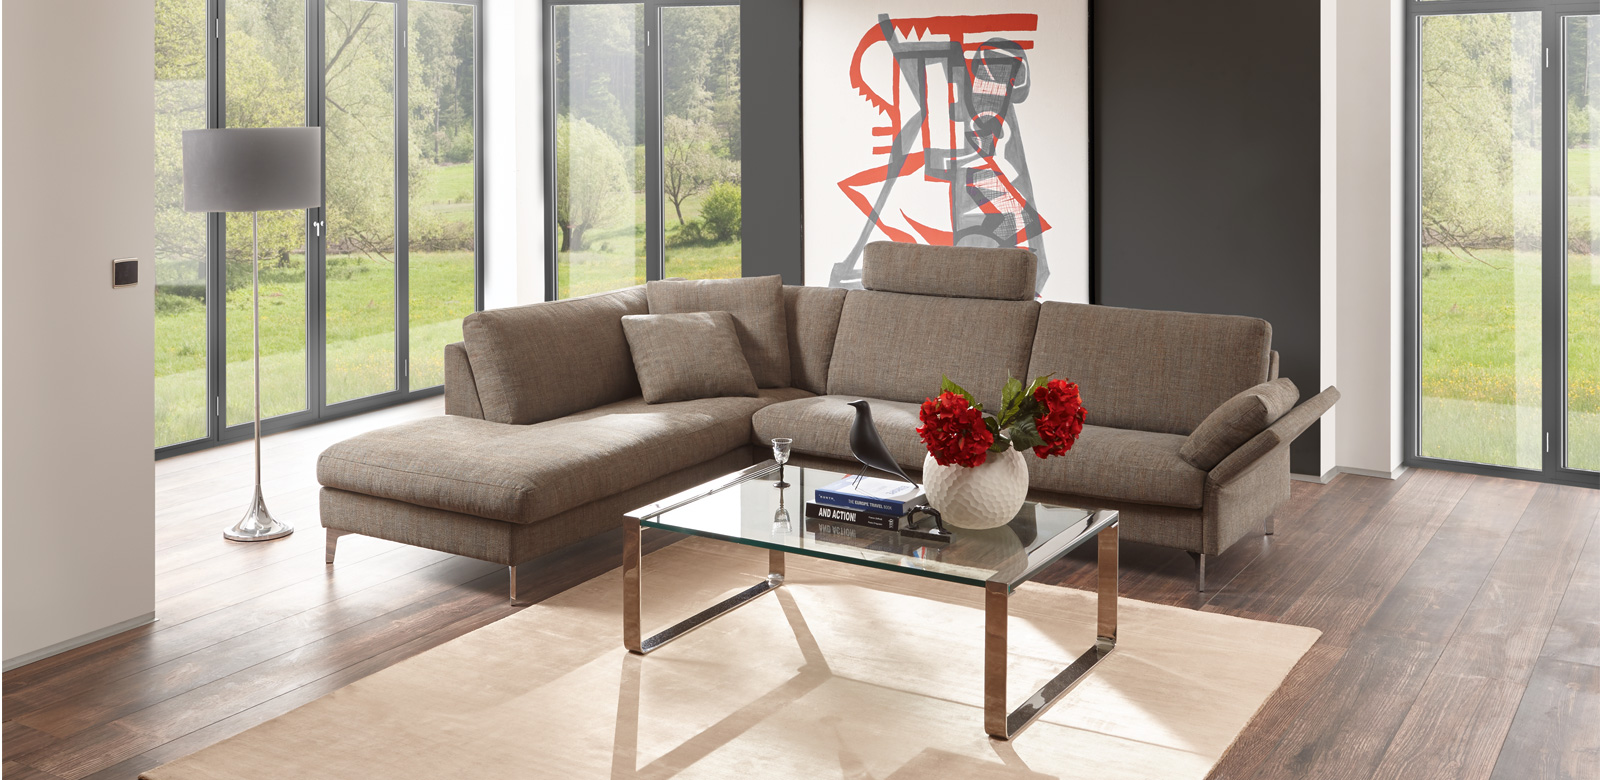 CL990 Longchair-Kombination aus grau-braunem Stoff in einem minimalistischem Wohnzimmer und Blick auf großen Garten